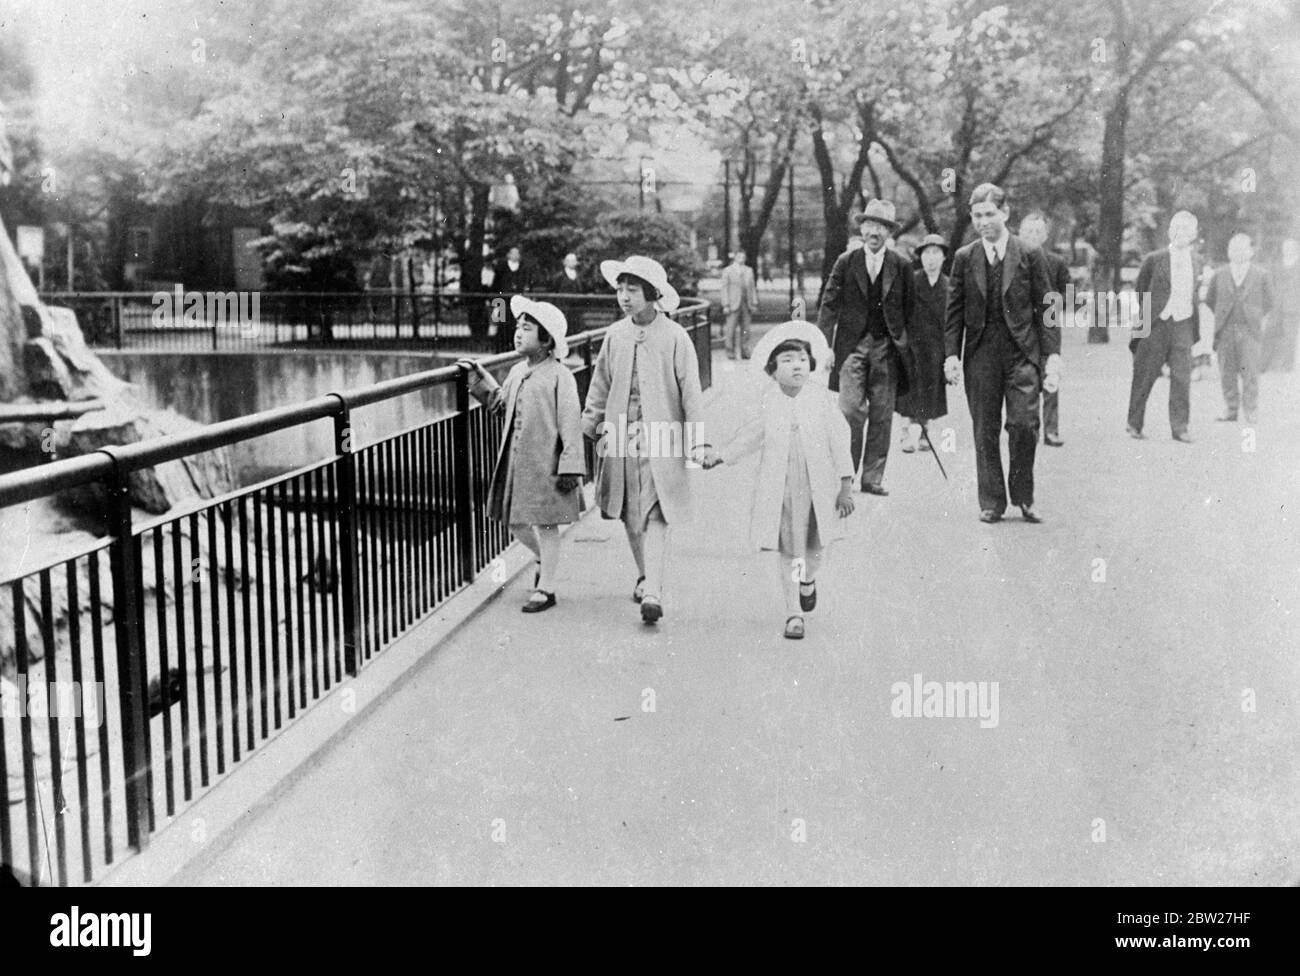 Die japanischen Prinzessinnen besuchen einen Zoo. Prinzessin Yori [Atsuko Ikeda] (rechts), Prinzessin Teru [Shigeko Higashikuni] und Prinzessin Taka [Kazuko Takatsukasa], die Töchter des japanischen Kaisers [Hirohito, Kaiser Showa], [Schwestern des zukünftigen Kaisers Akihito], die zusammen mit dem Regisseur Michikazu Koga durch den Ueno Zoo in Tokio reisen. Juli 1937 Stockfoto